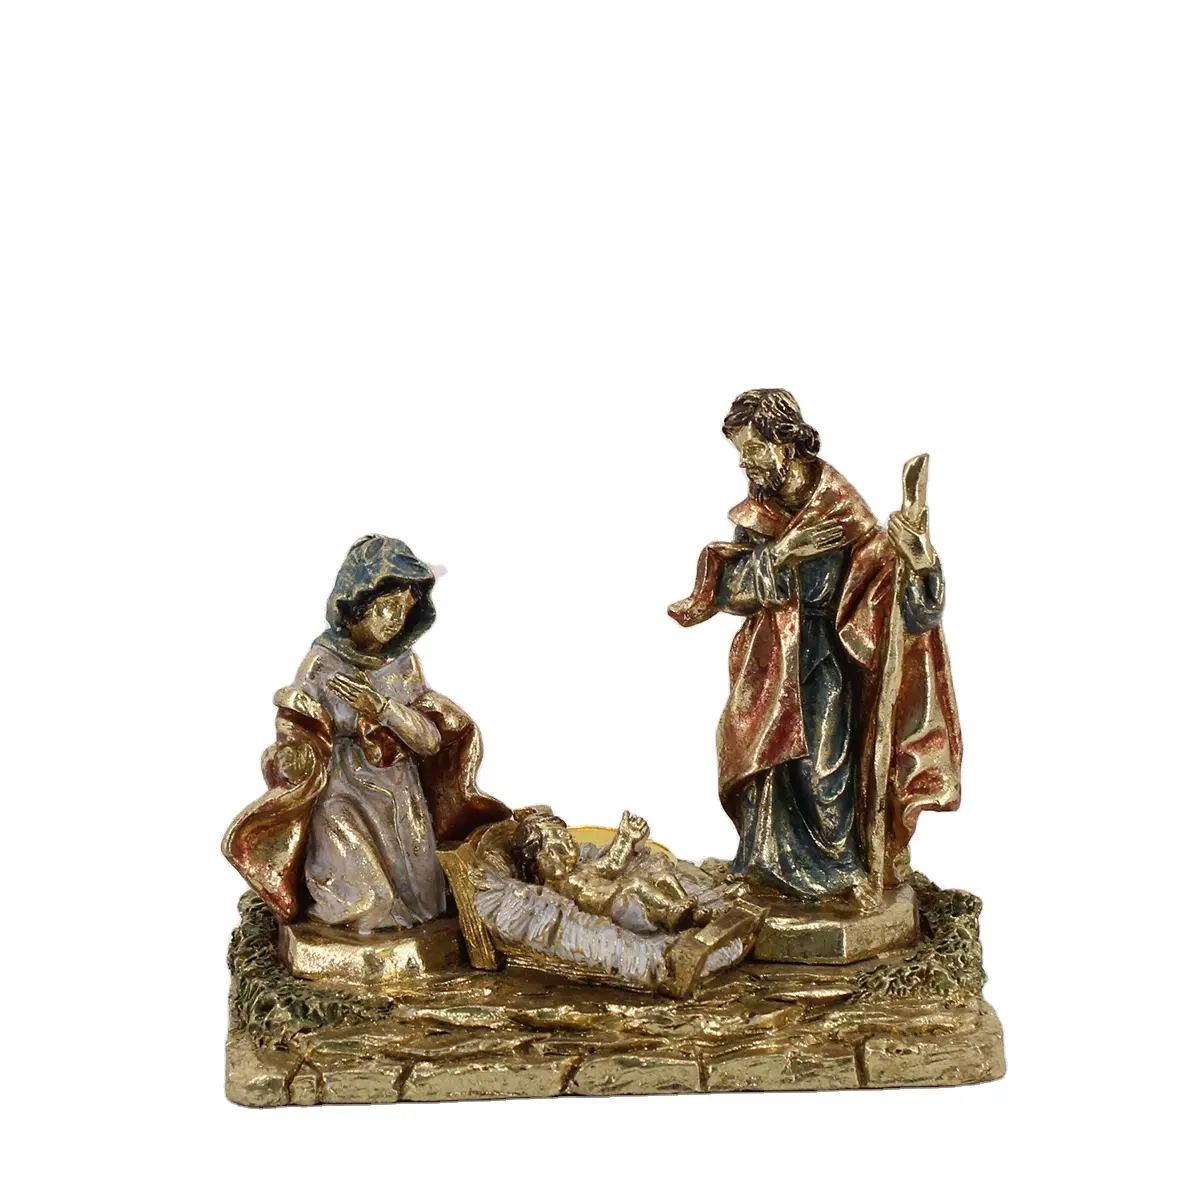 Estatua de Natividad de Jesús para decoración navideña, escultura de resina religiosa de la Santa Familia